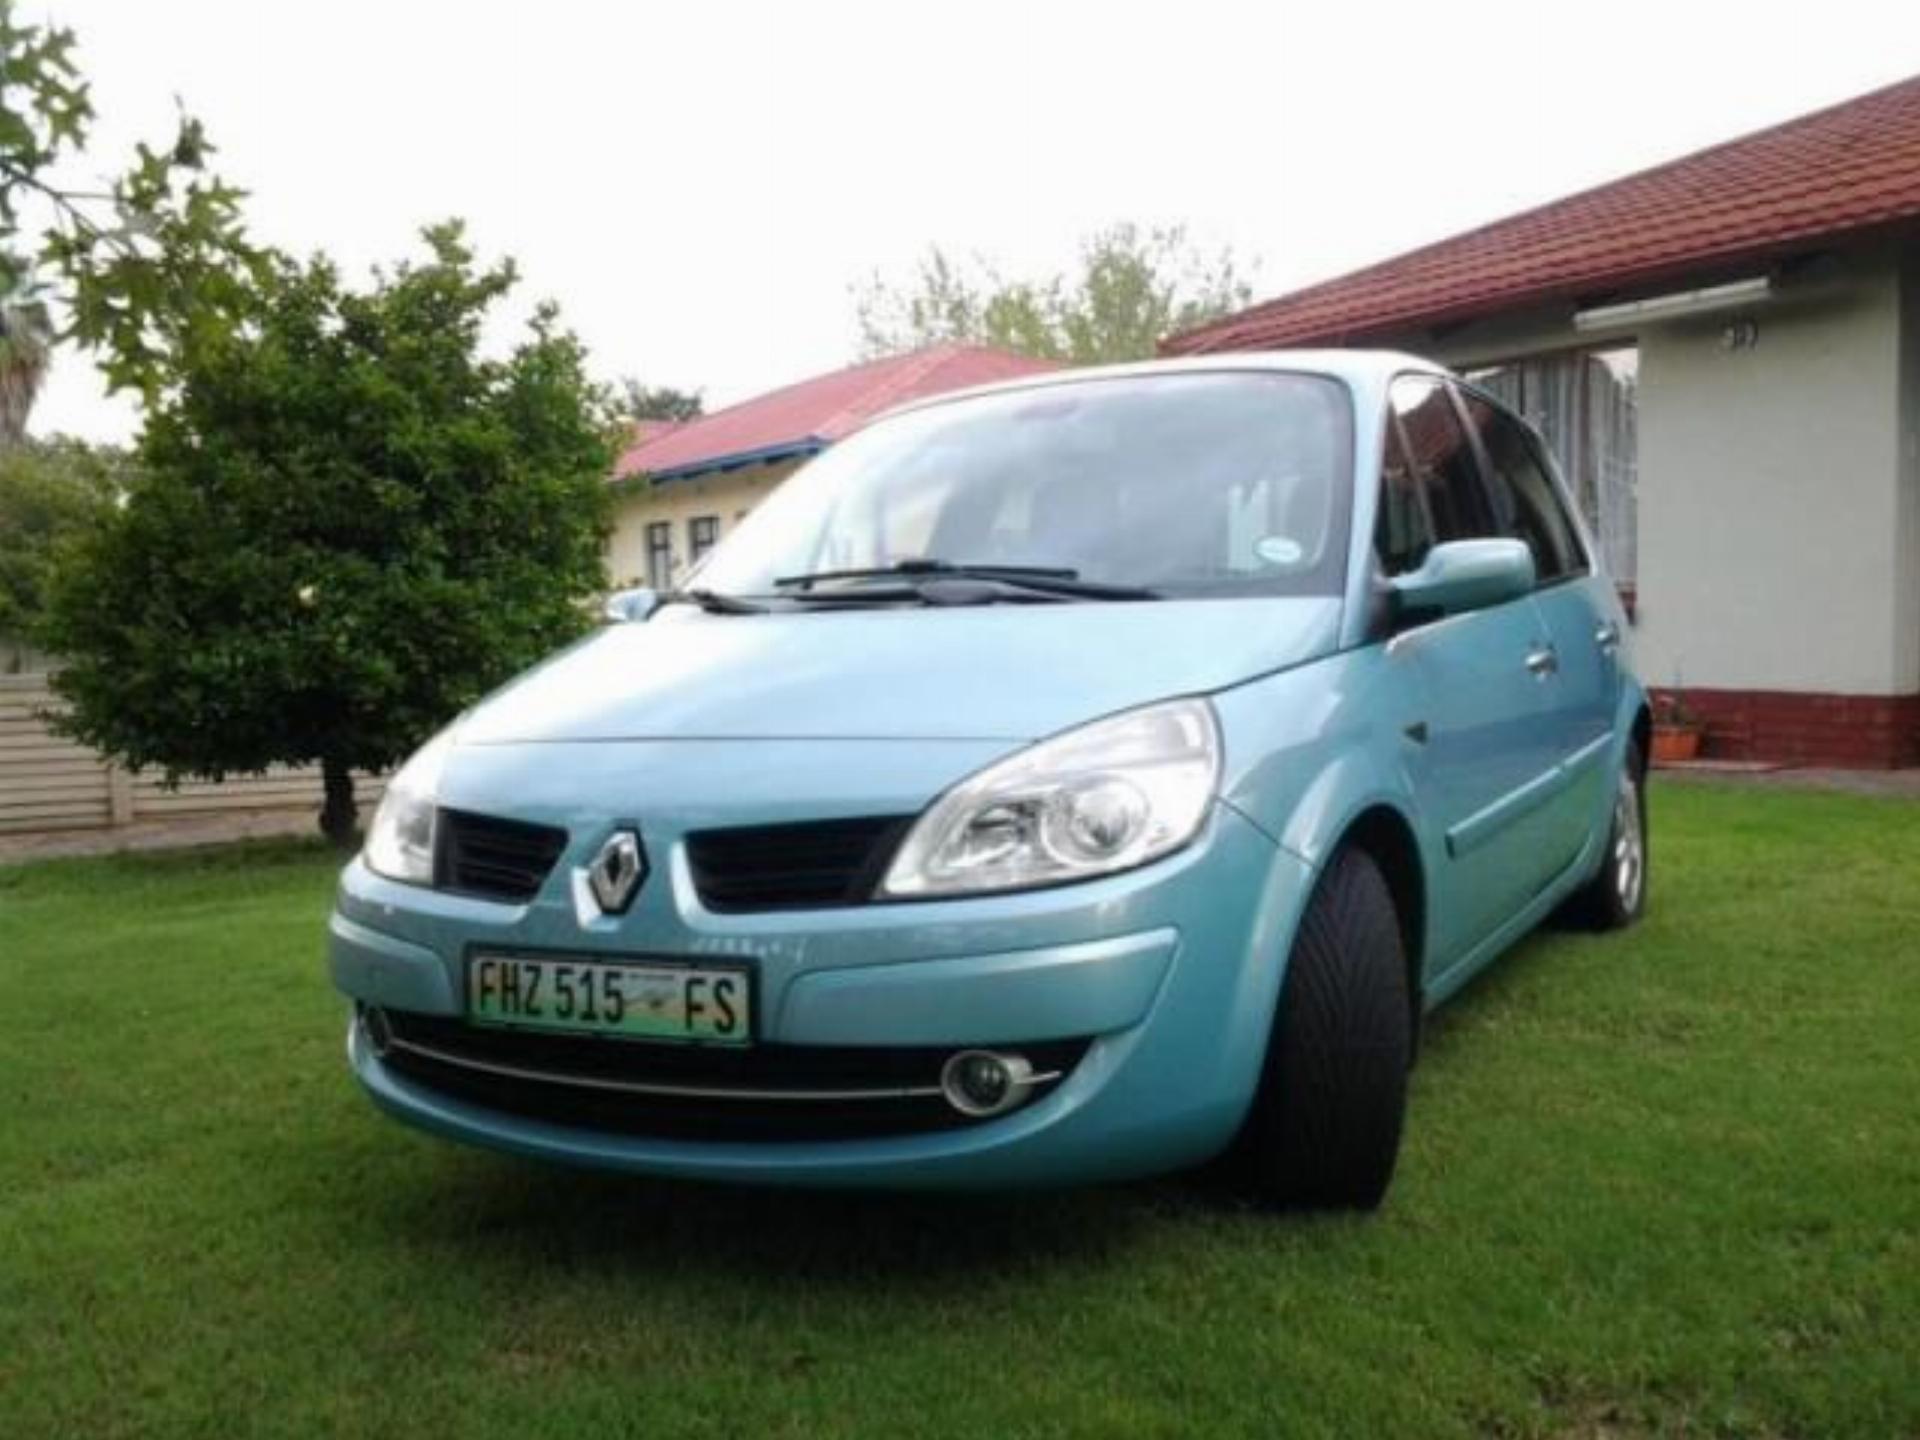 Renault Scenic 2.0 Auto